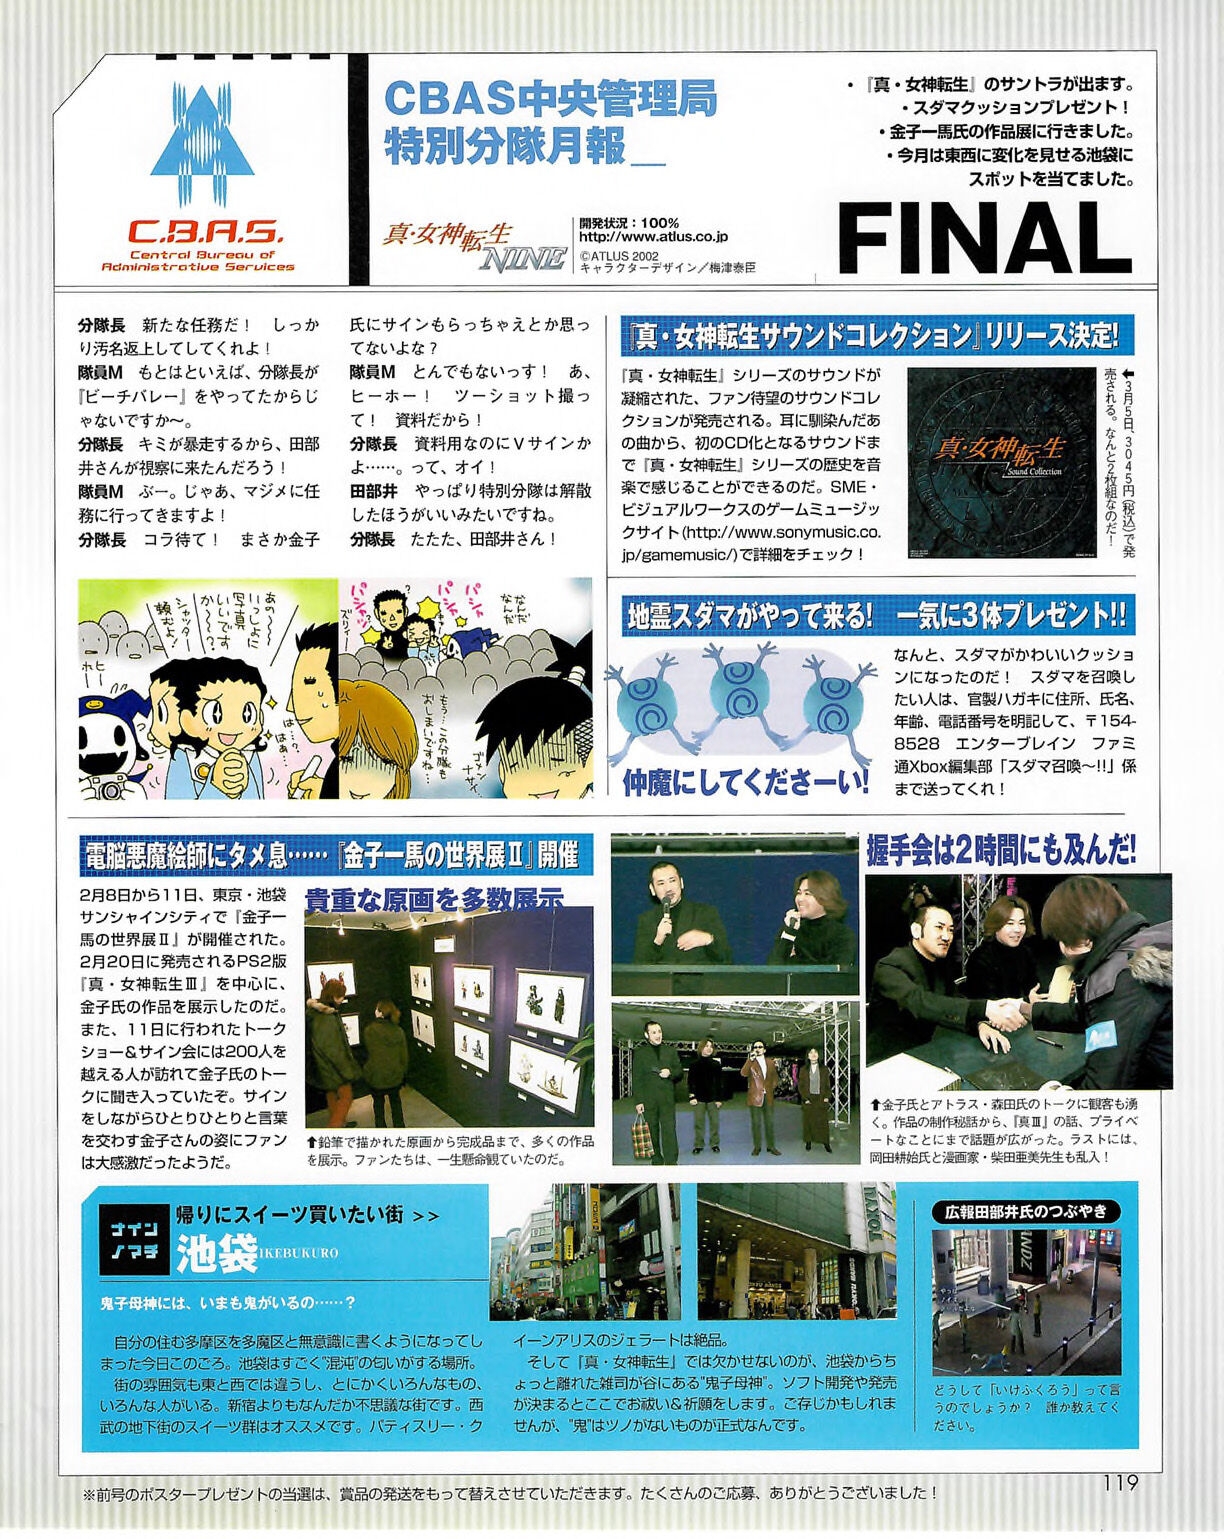 Famitsu_Xbox_2003-04_jp2 118